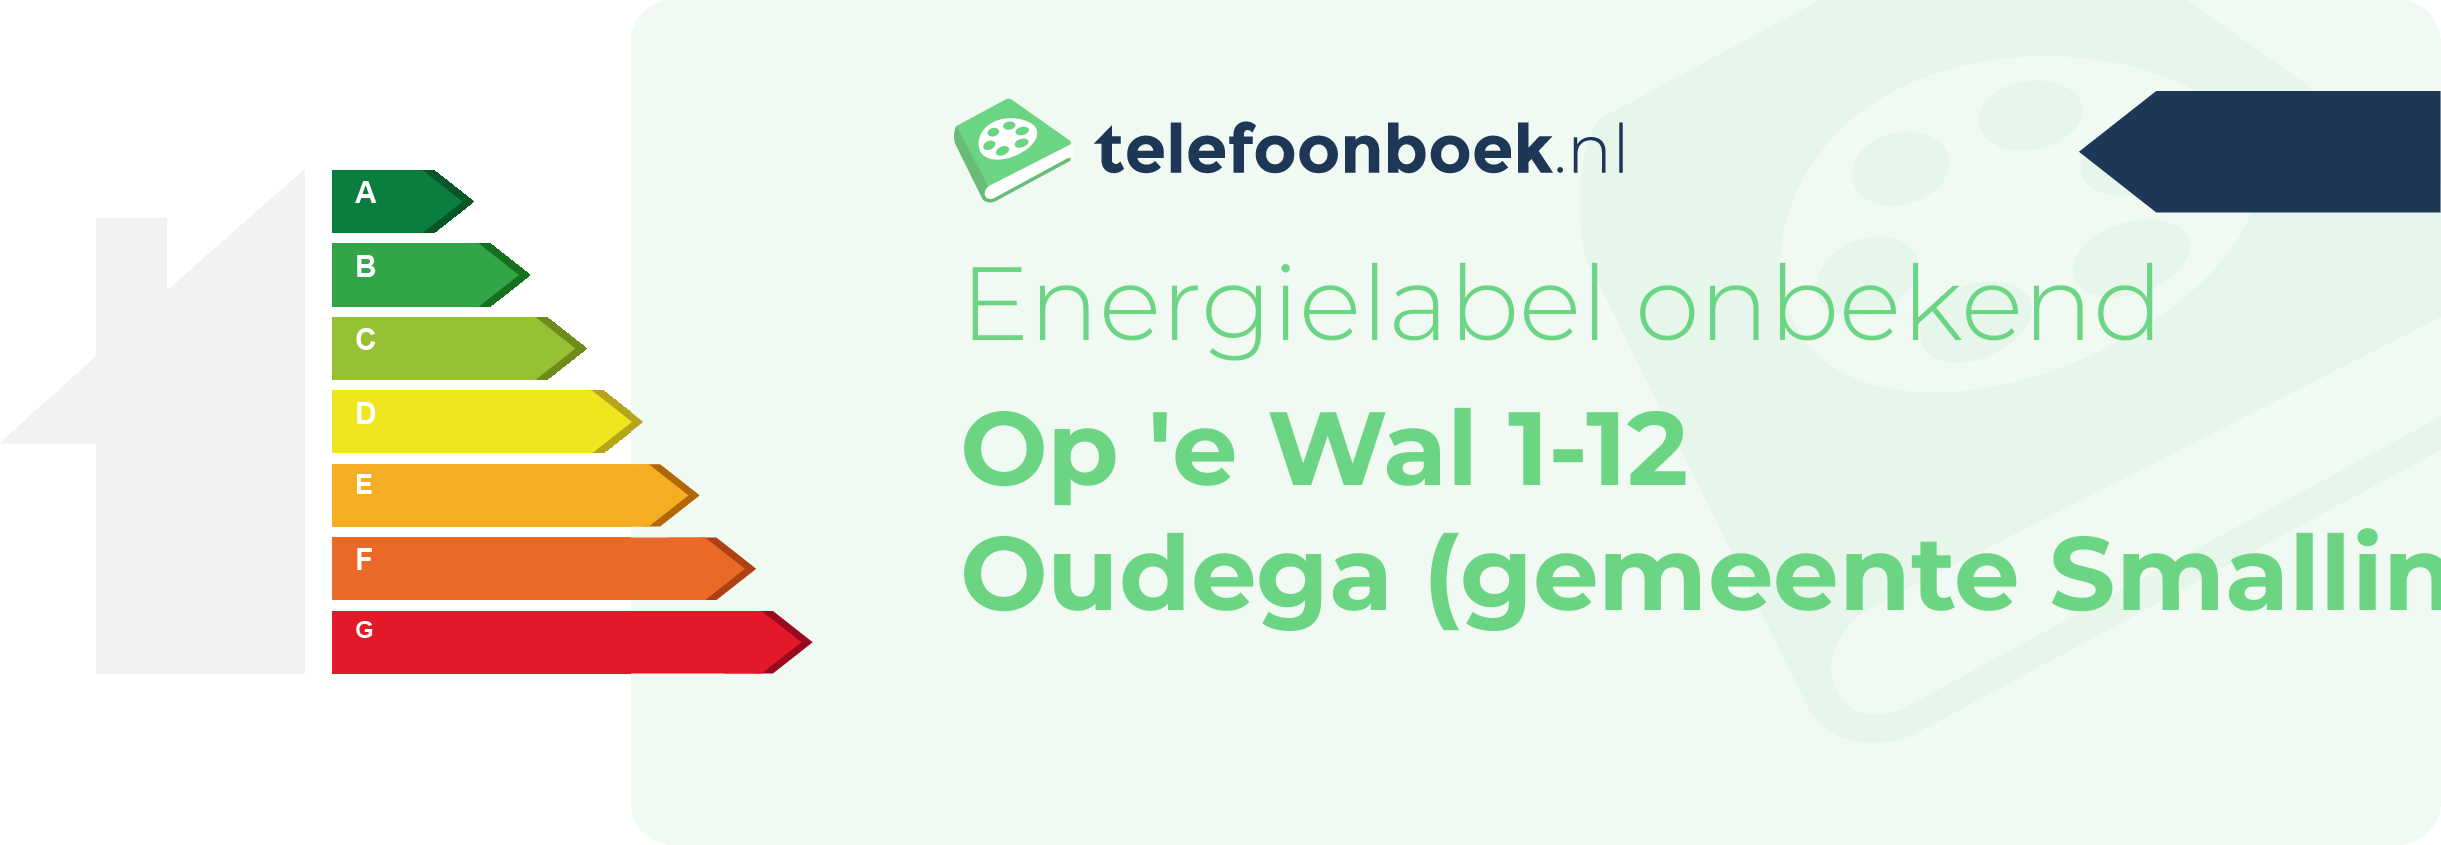 Energielabel Op 'e Wal 1-12 Oudega (gemeente Smallingerland Friesland)